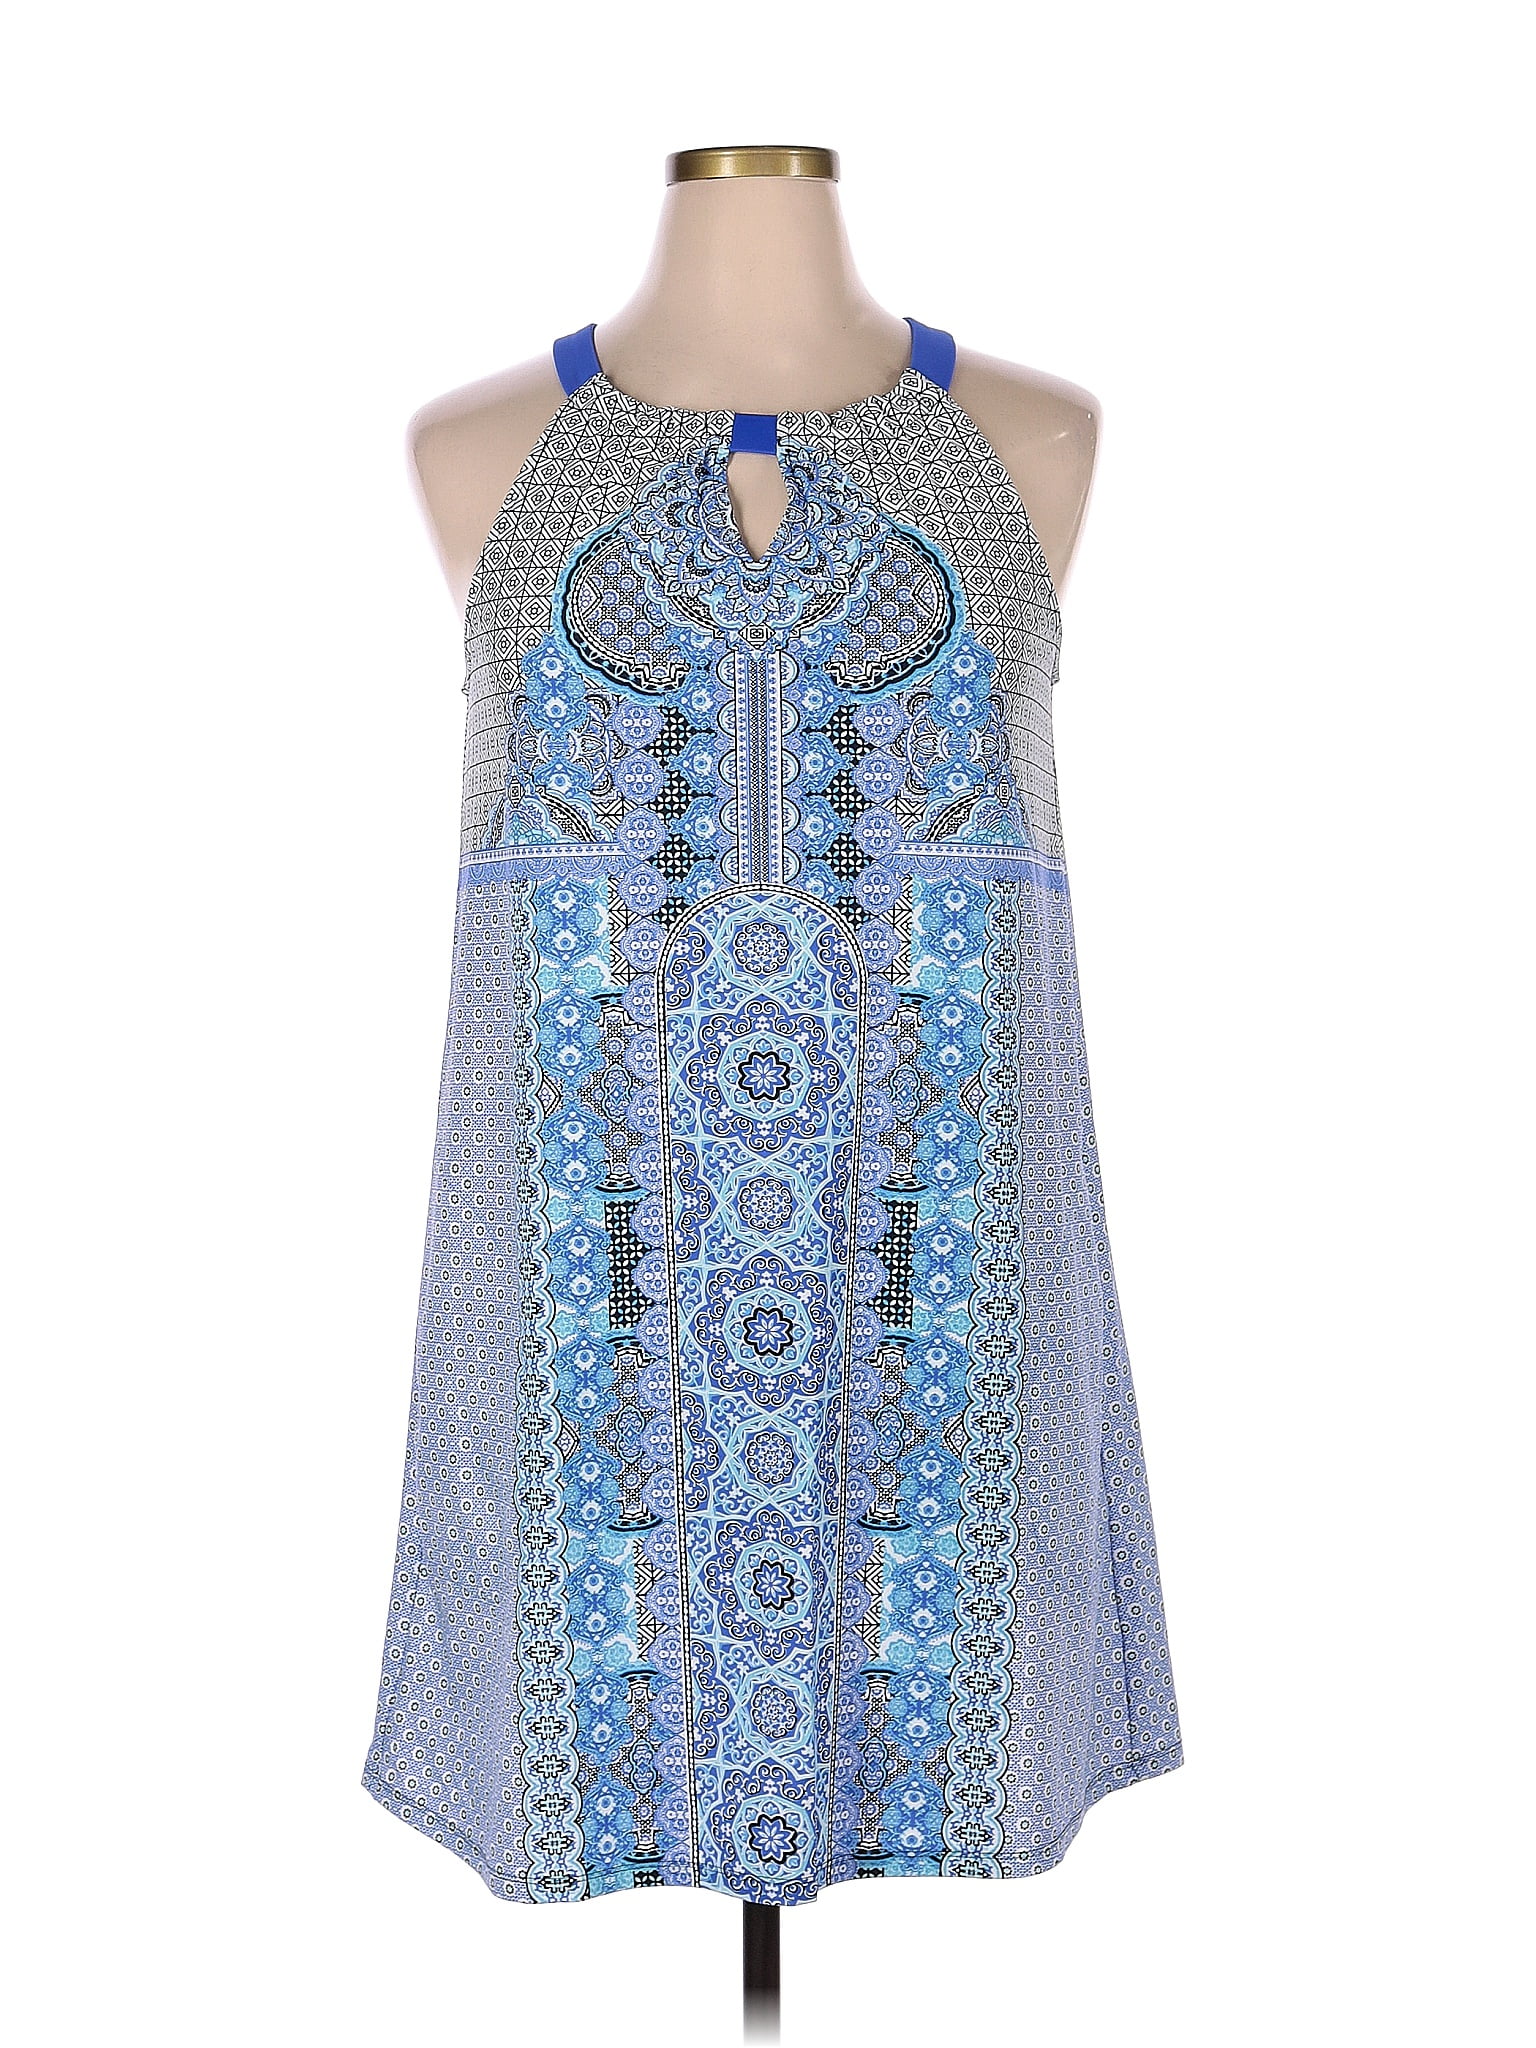 Cabana Life Blue Casual Dress Size XL - 75% off | thredUP